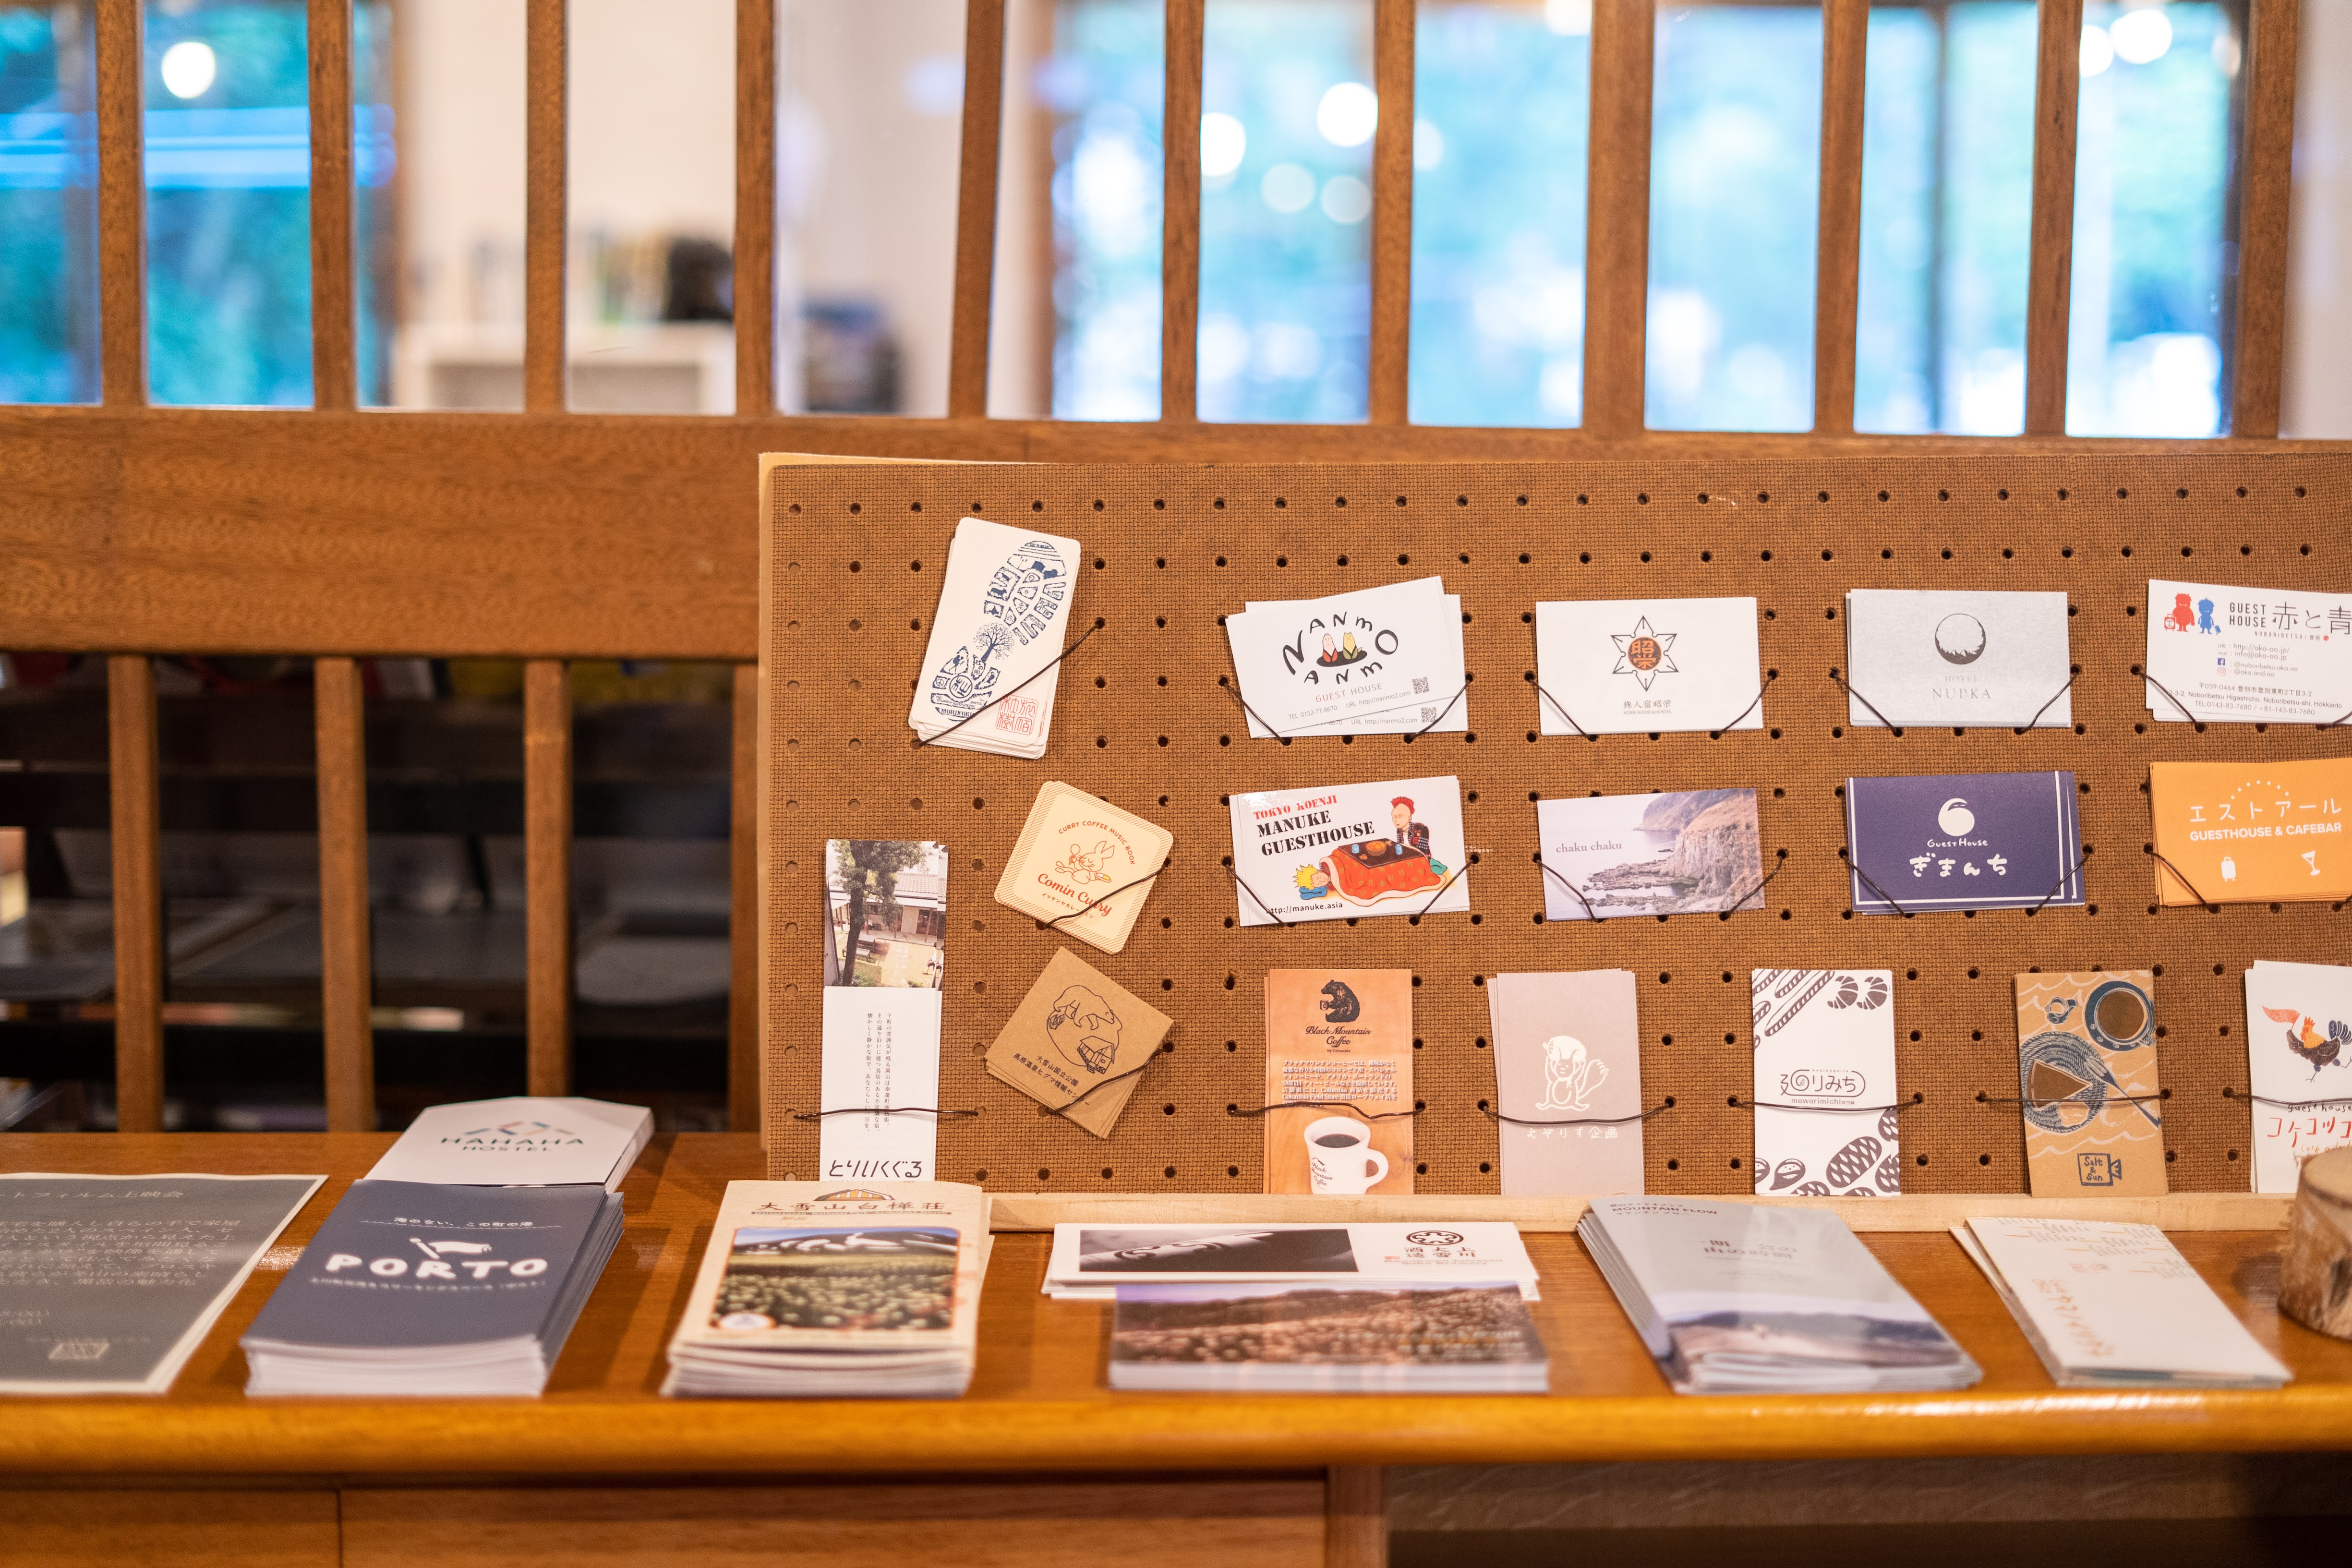 登山マップや近隣施設のご案内、スタッフおすすめのお店のカードなどを置いています。